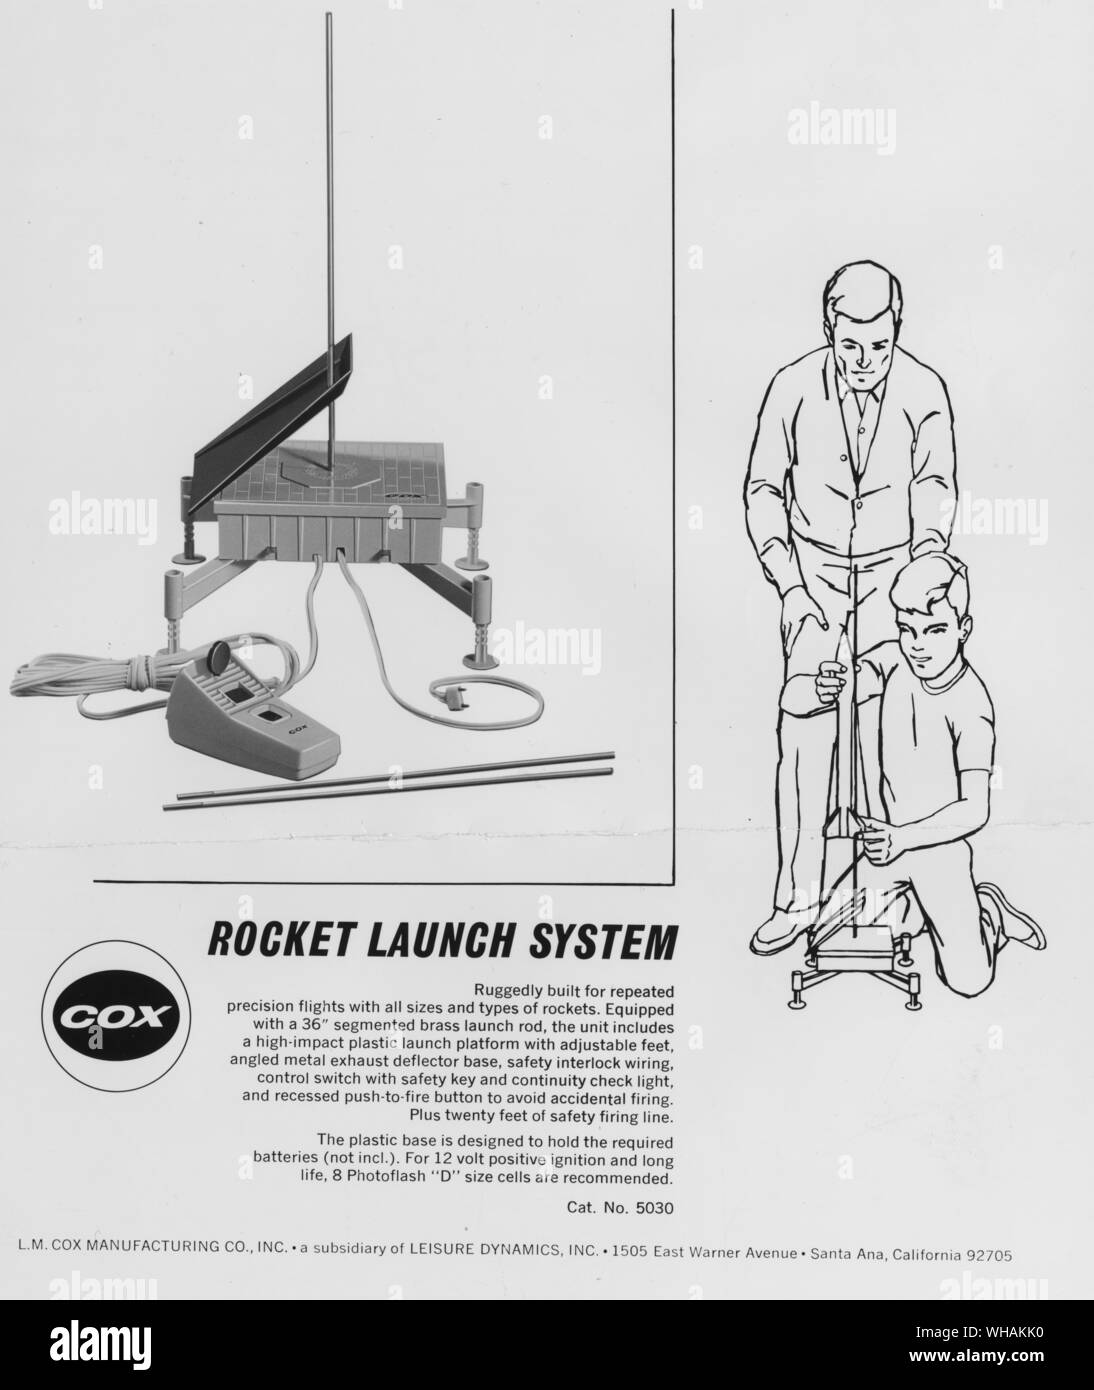 Un système de lancement de fusée modèle commercialisé par L M Cox Manufacturing Co de Californie Banque D'Images